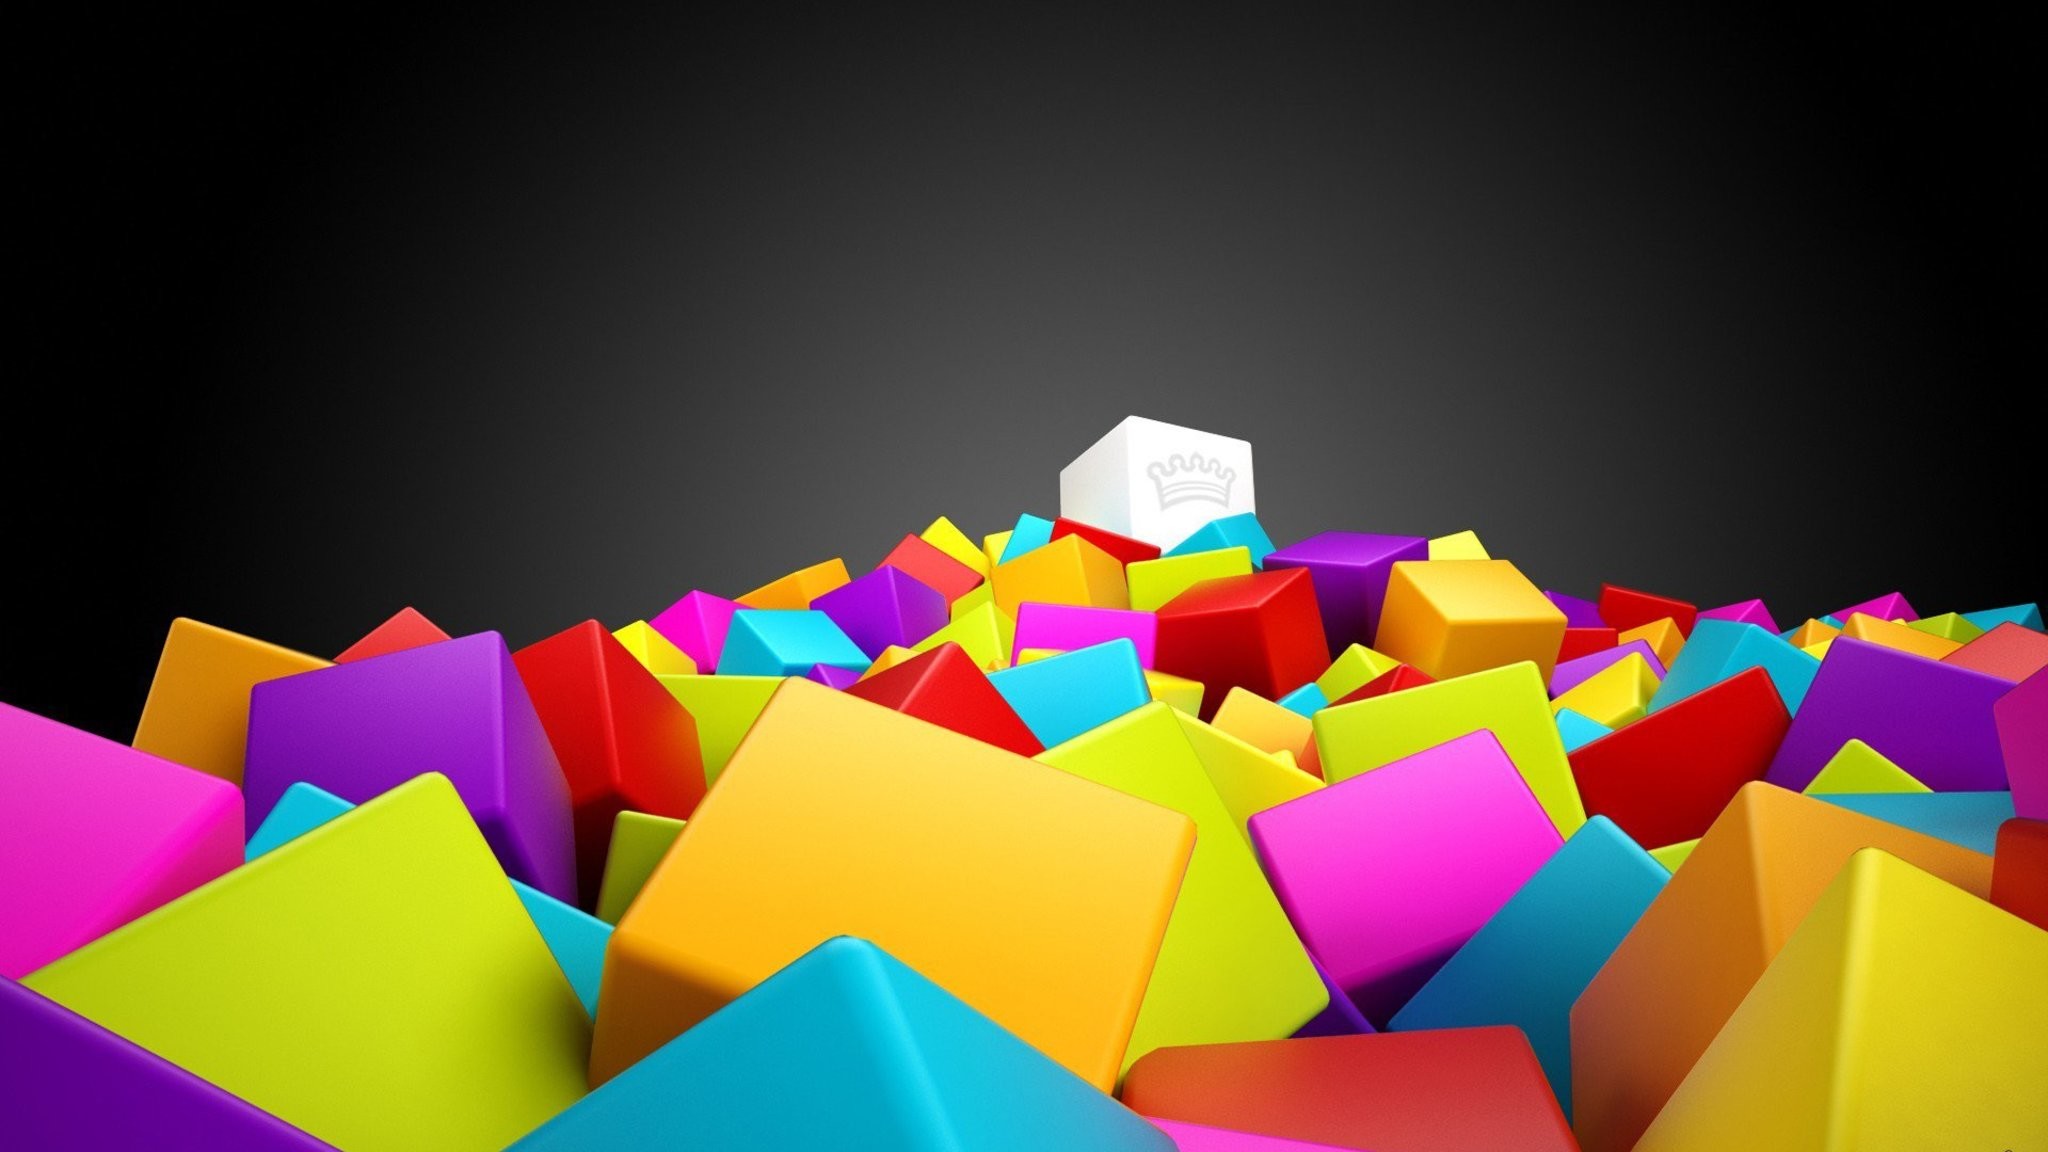 2048x1152 3d-cubes.jpg